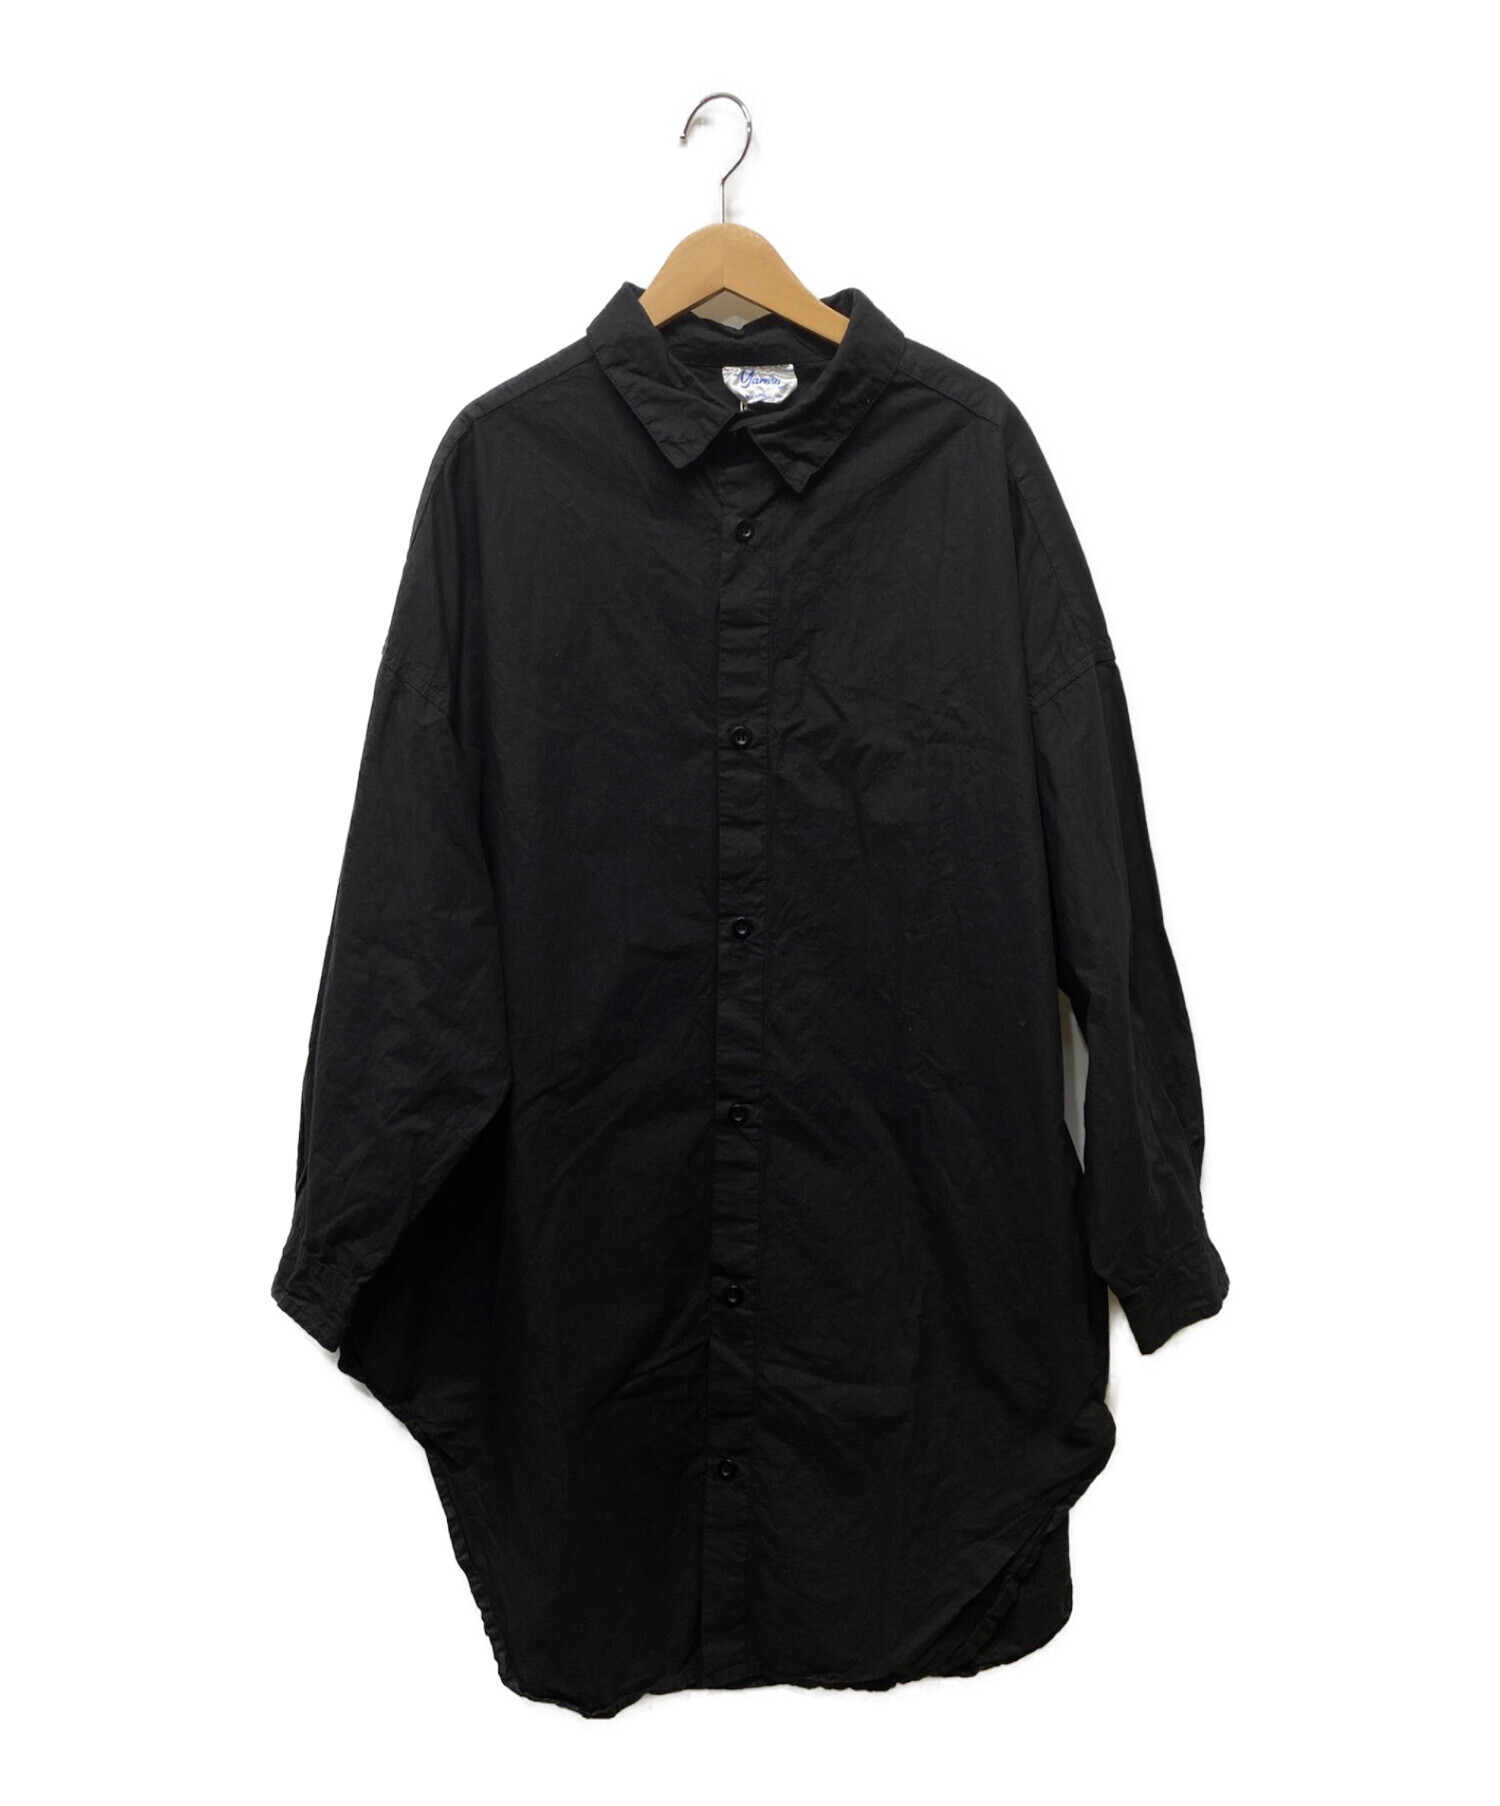 Yarmo (ヤーモ) オーバーサイズシャツ ブラック サイズ:FREE